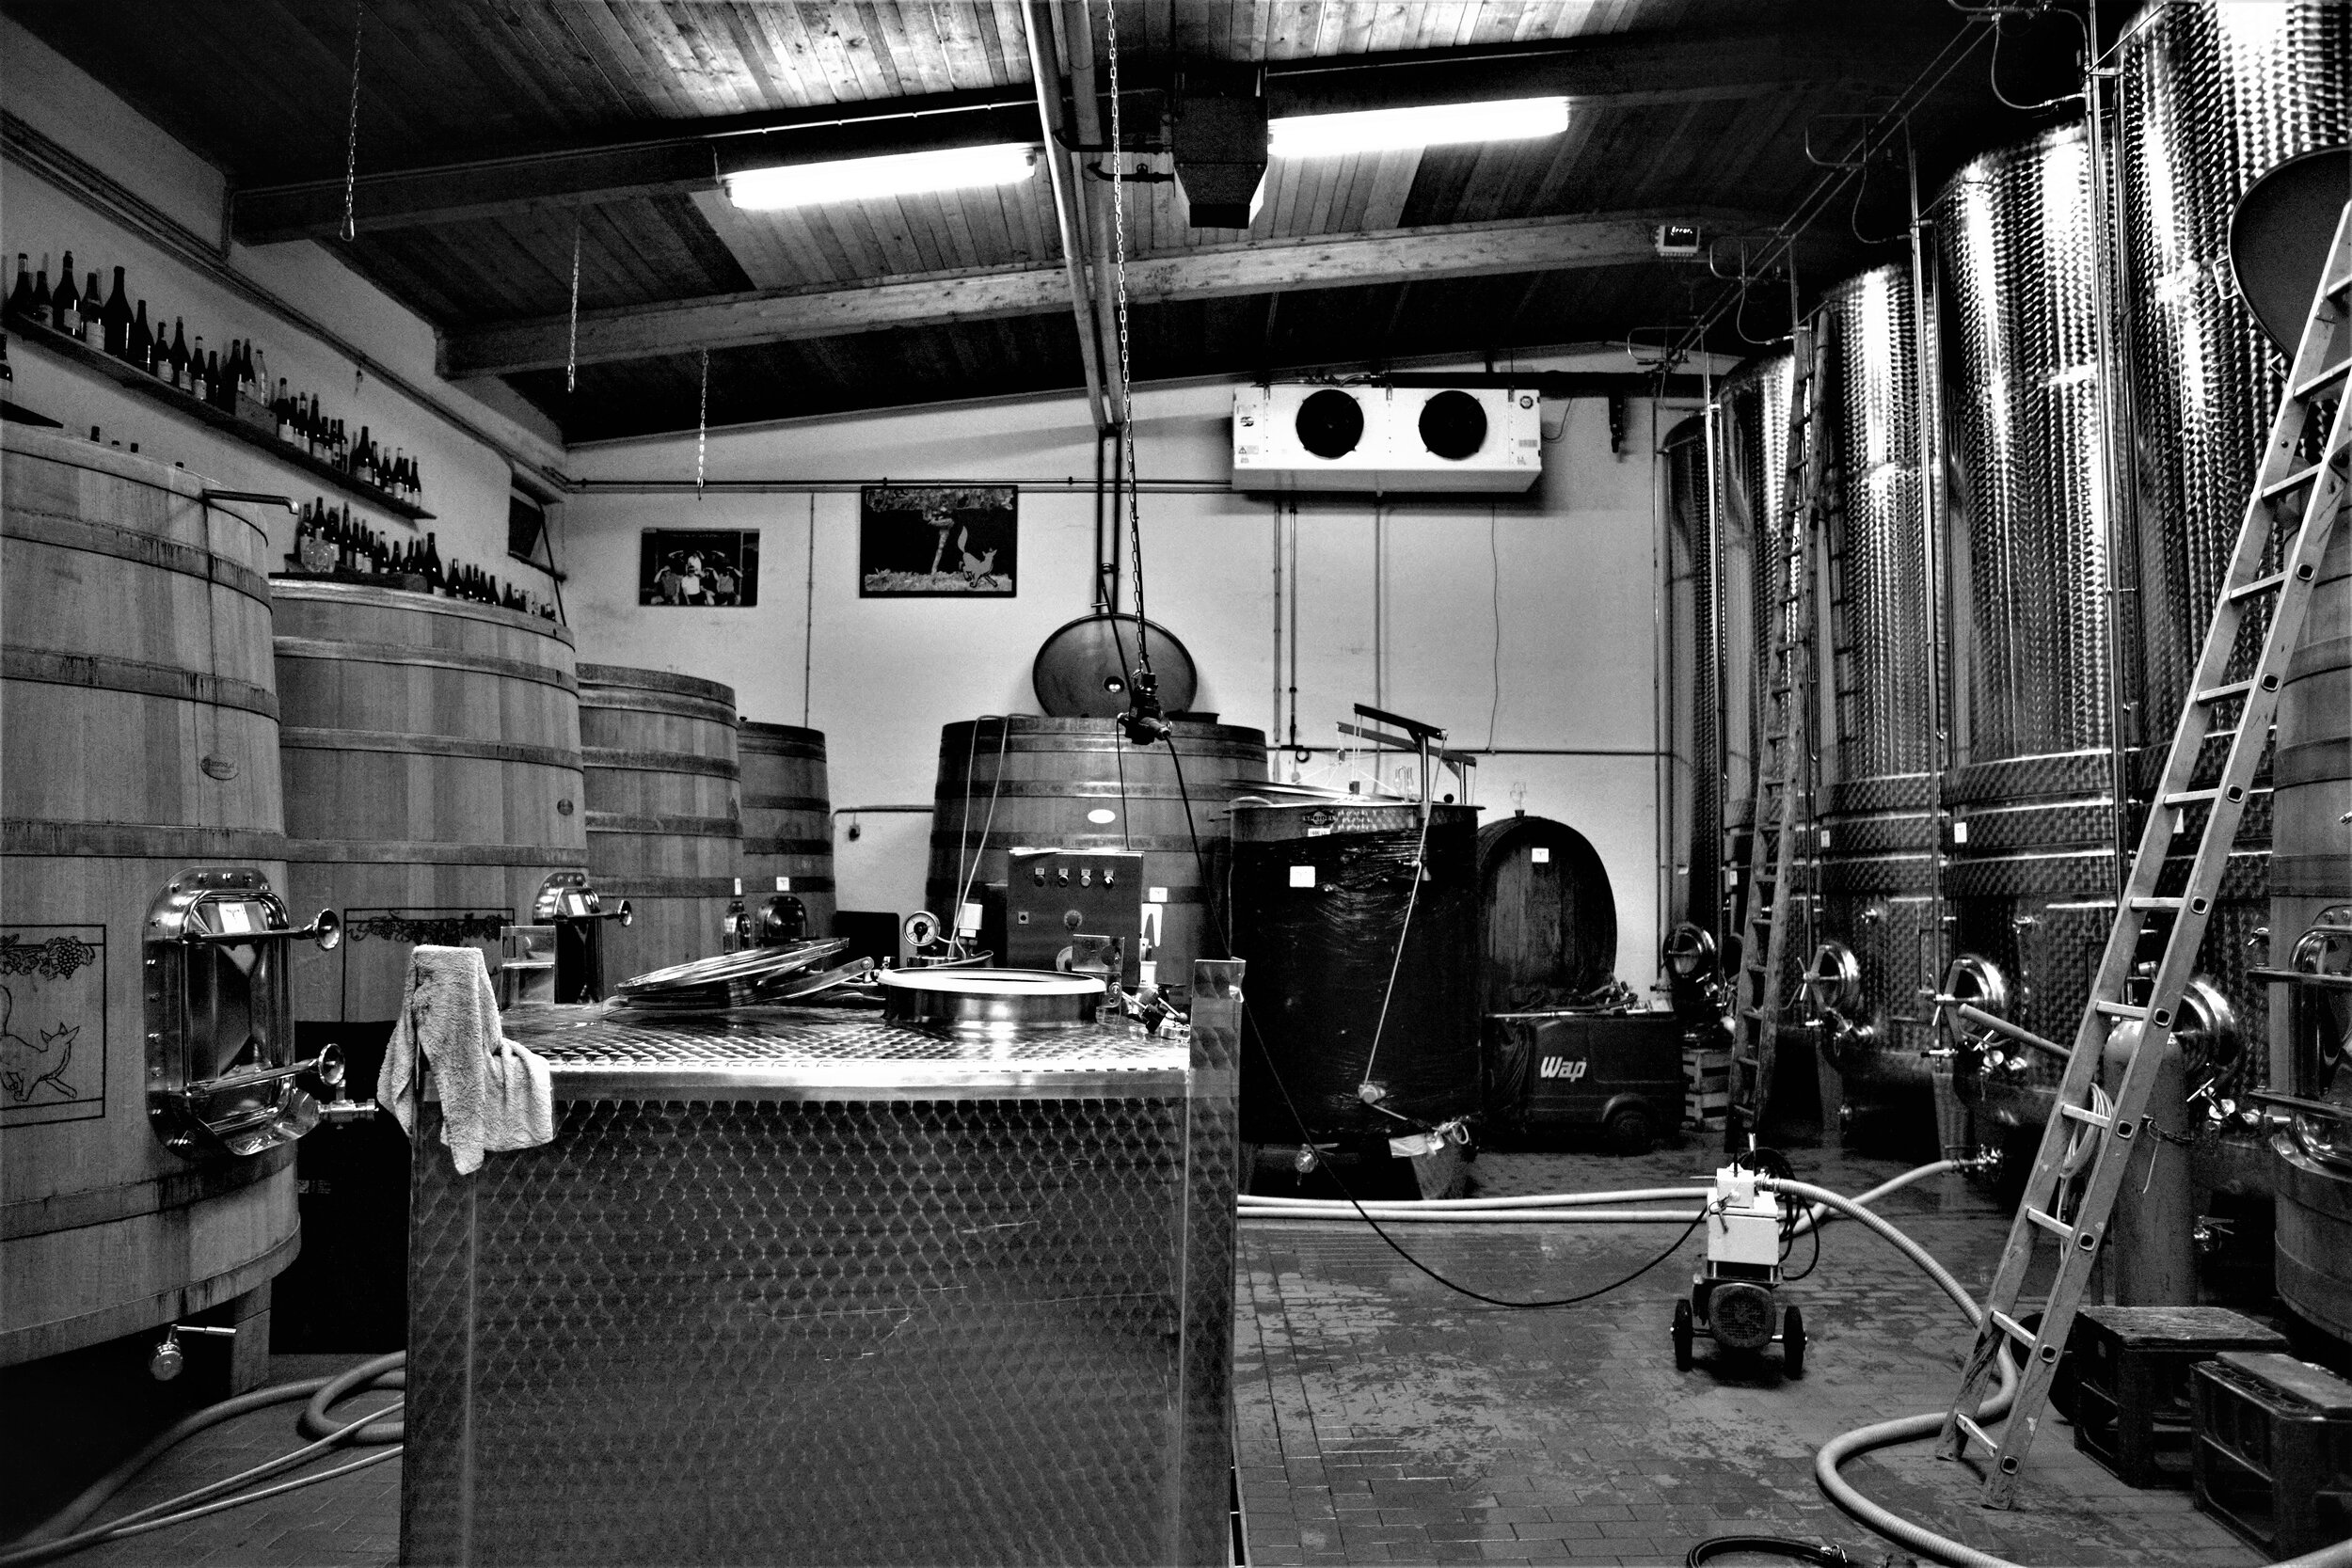  Der Keller des Weinguts ist zweckmässig eingerichtet. Viel Technik findet man hier nicht. 